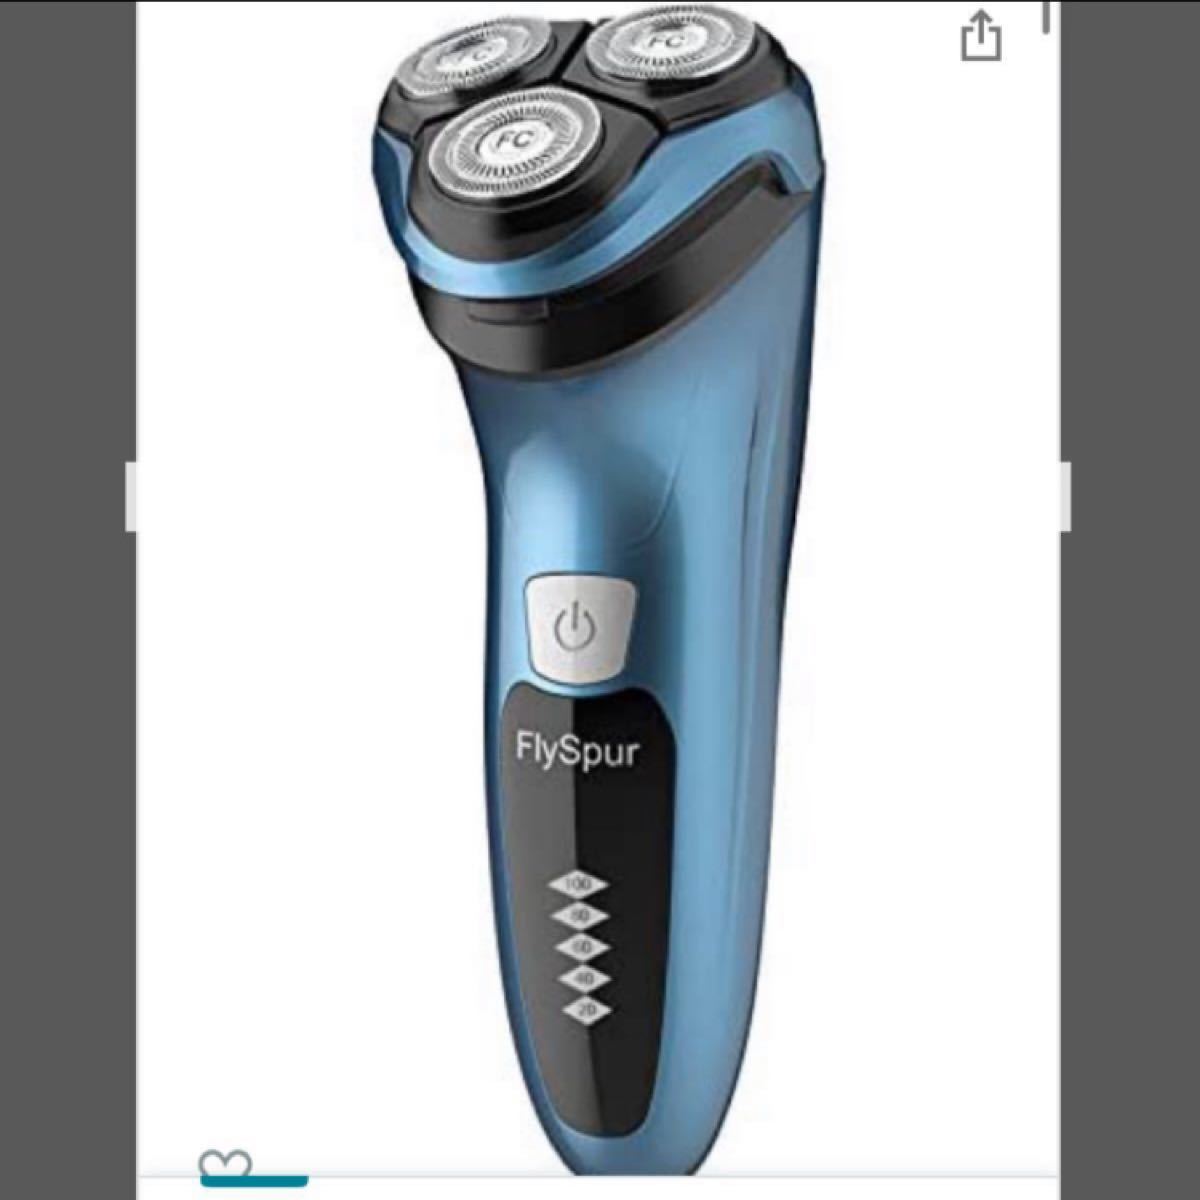 新品未開封電気シェーバー メンズ FlySpur 髭剃り ひげそり USB充電式 回転式 3枚刃 お風呂剃り可 IPX7防水